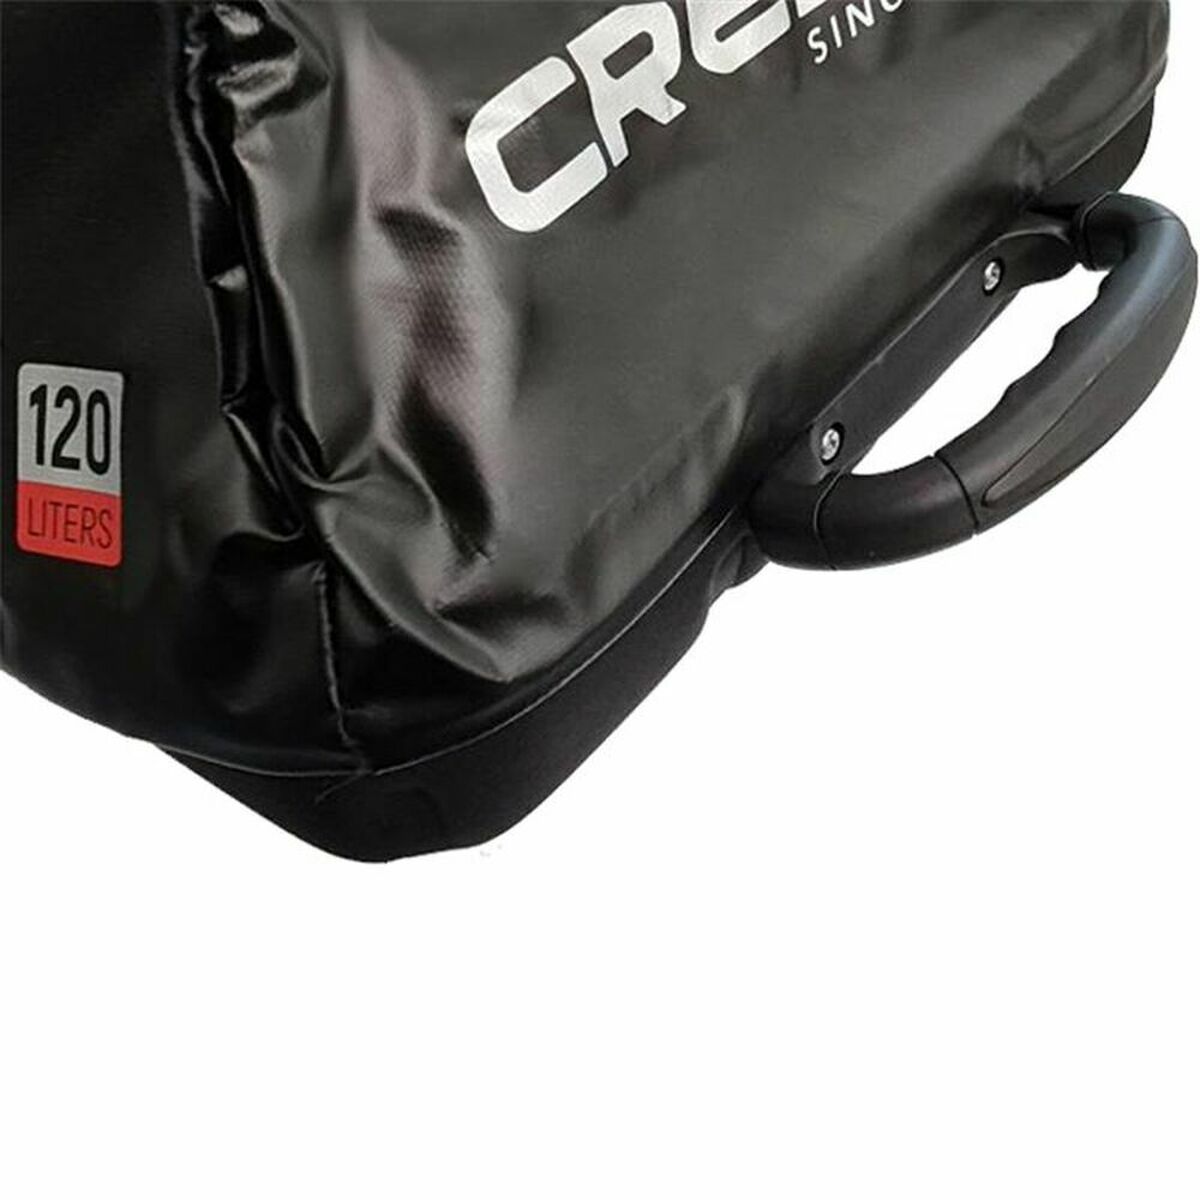 Sports bag Tuna Roll Cressi-Sub XUB976200 120 L